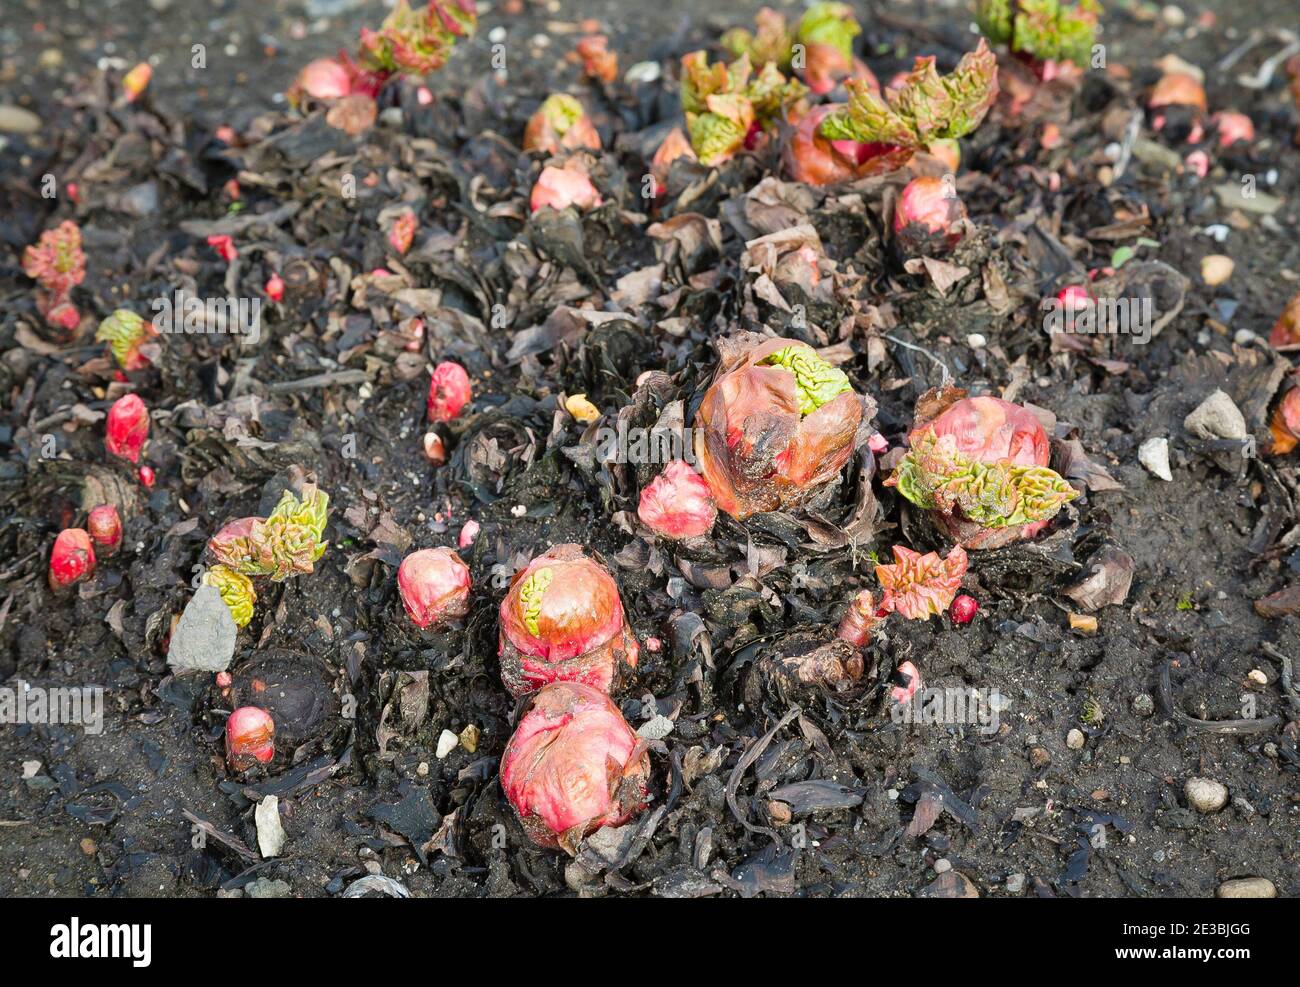 Rhabarber Pflanze, junge neue Triebe aus Garten Rhabarber Kronen in Boden, UK Gemüsegärten Stockfoto